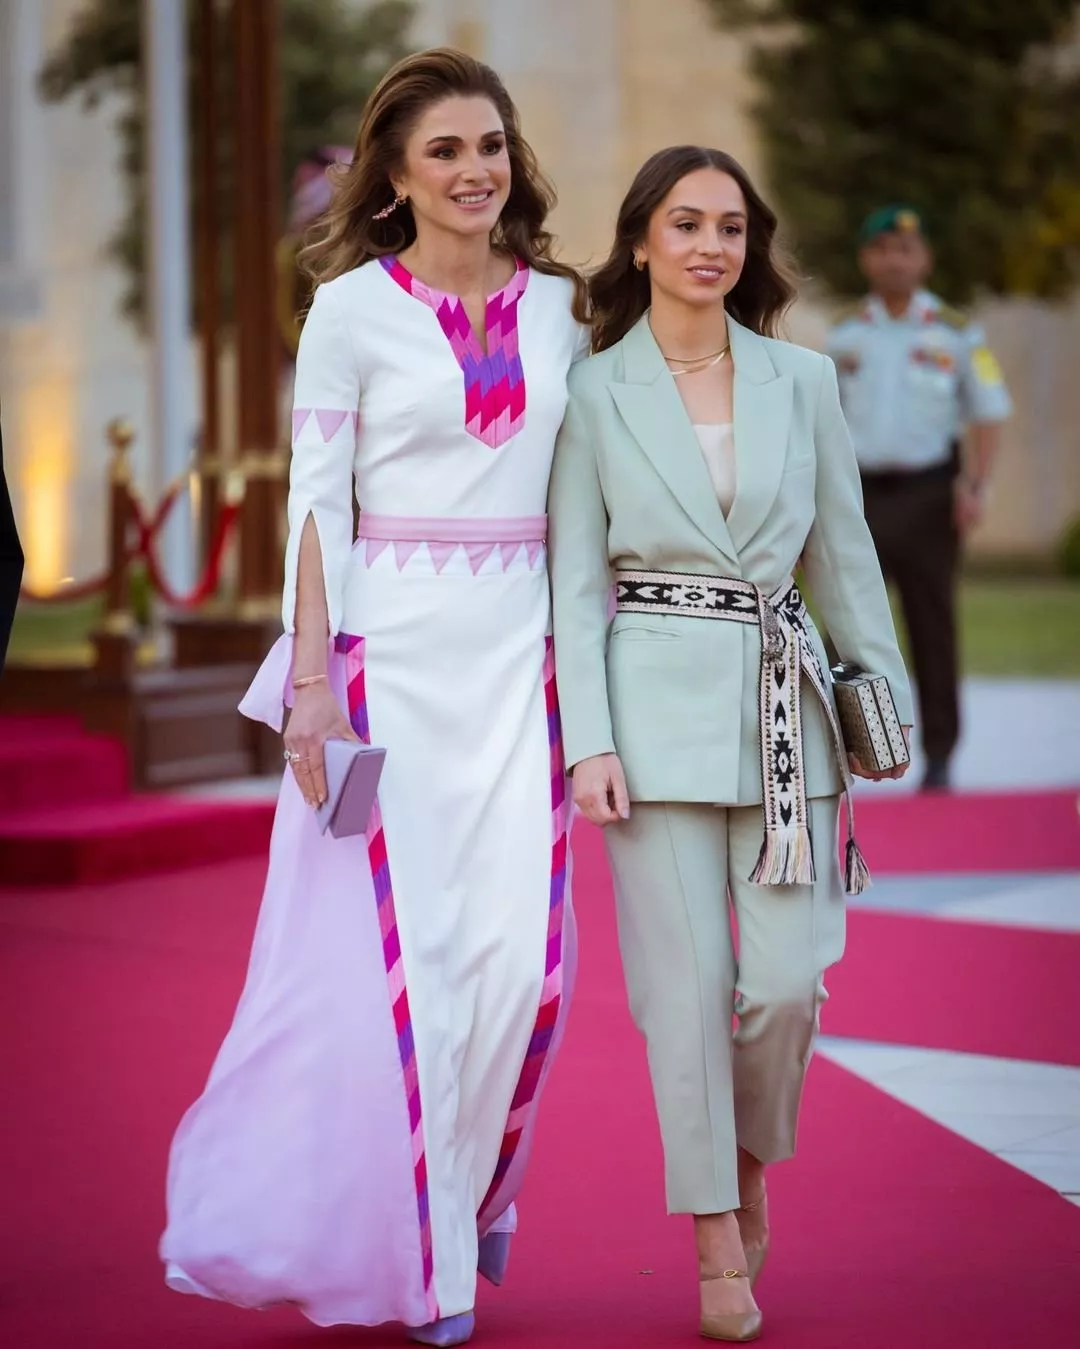 أجمل إطلالات الملكة رانيا في المناسبات عبر السنين: أناقة لا تُضاهى!